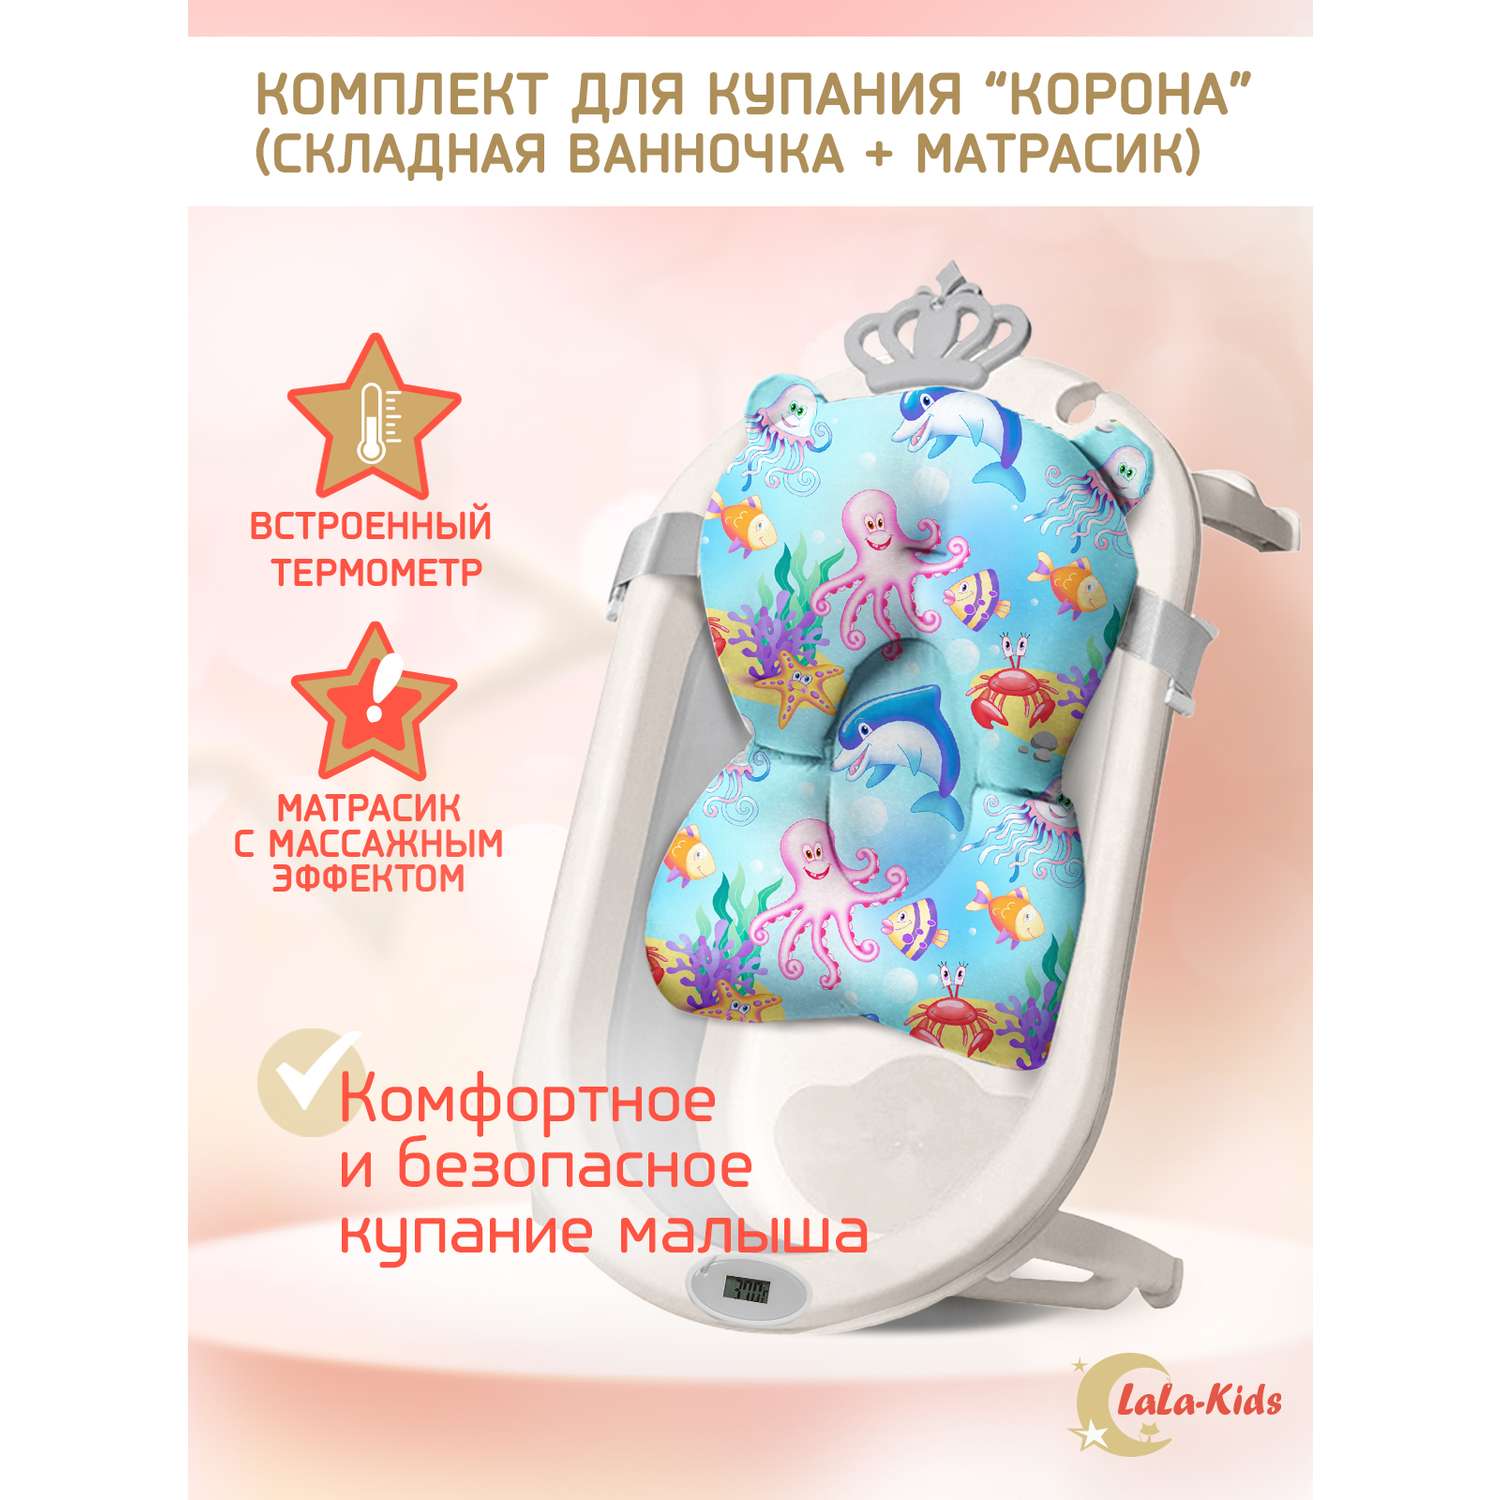 Детская ванночка LaLa-Kids складная для купания новорожденных с термометром и матрасиком в комплекте - фото 2